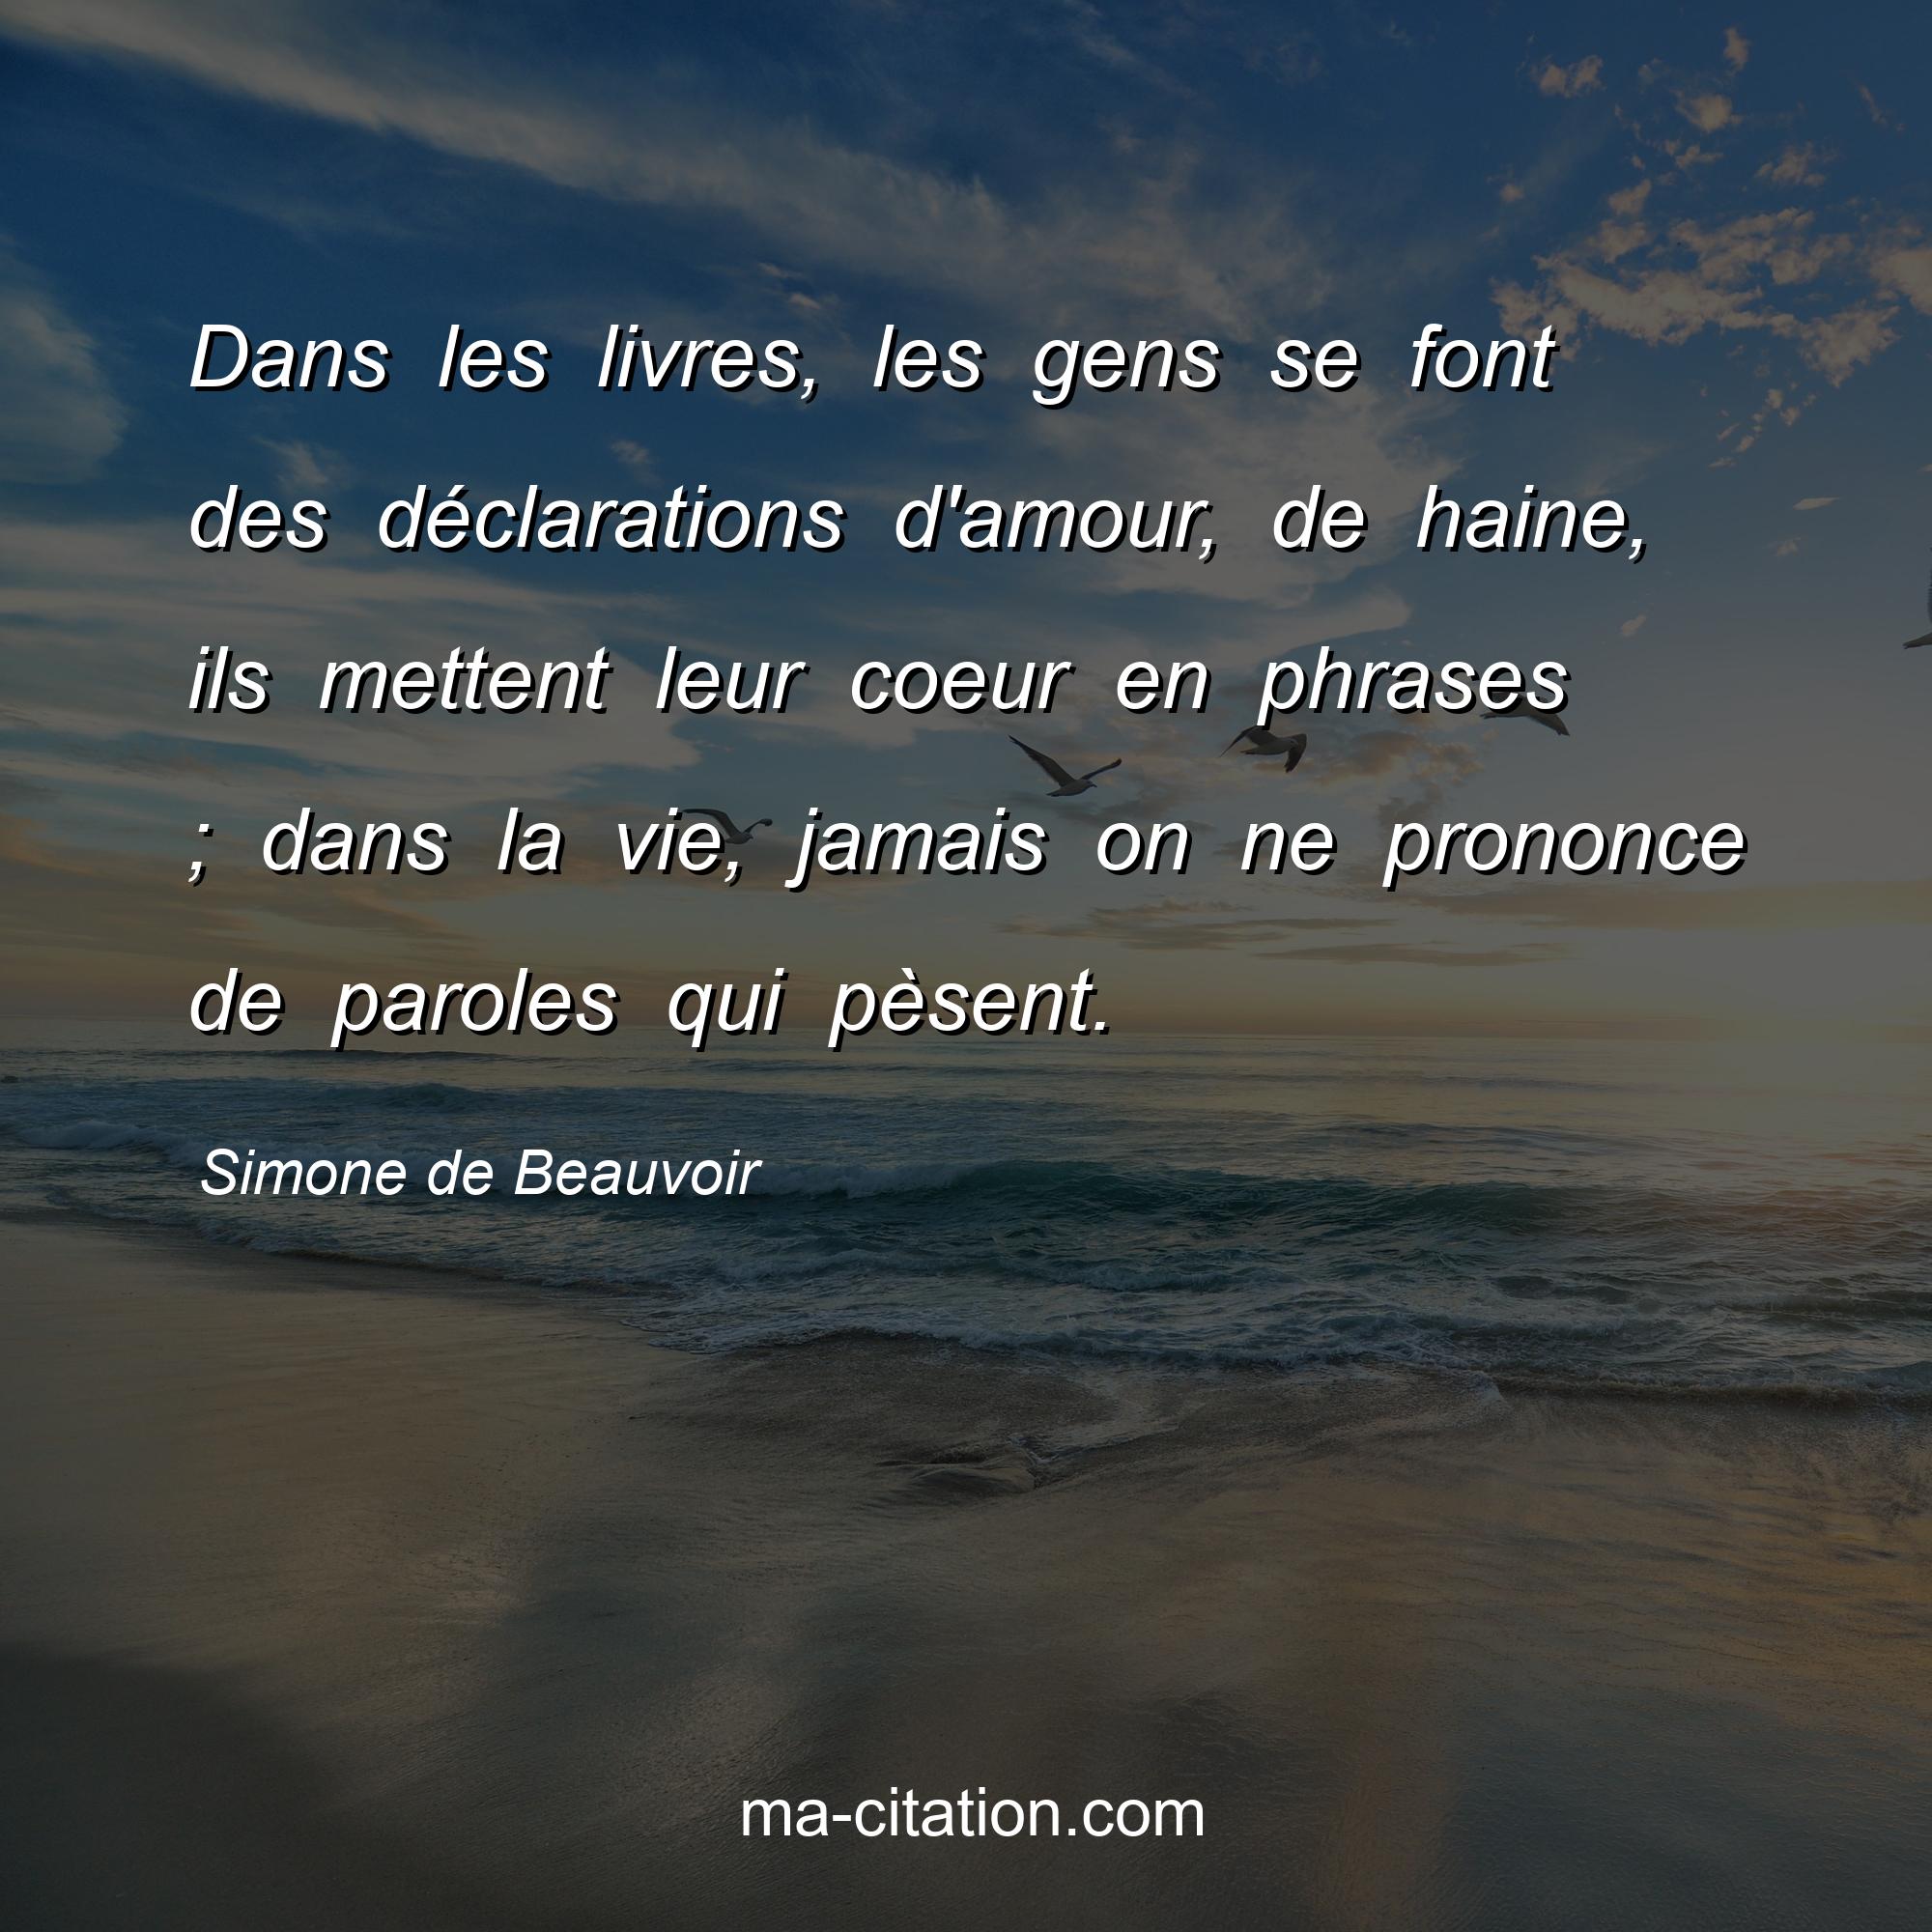 Simone de Beauvoir : Dans les livres, les gens se font des déclarations d'amour, de haine, ils mettent leur coeur en phrases ; dans la vie, jamais on ne prononce de paroles qui pèsent.